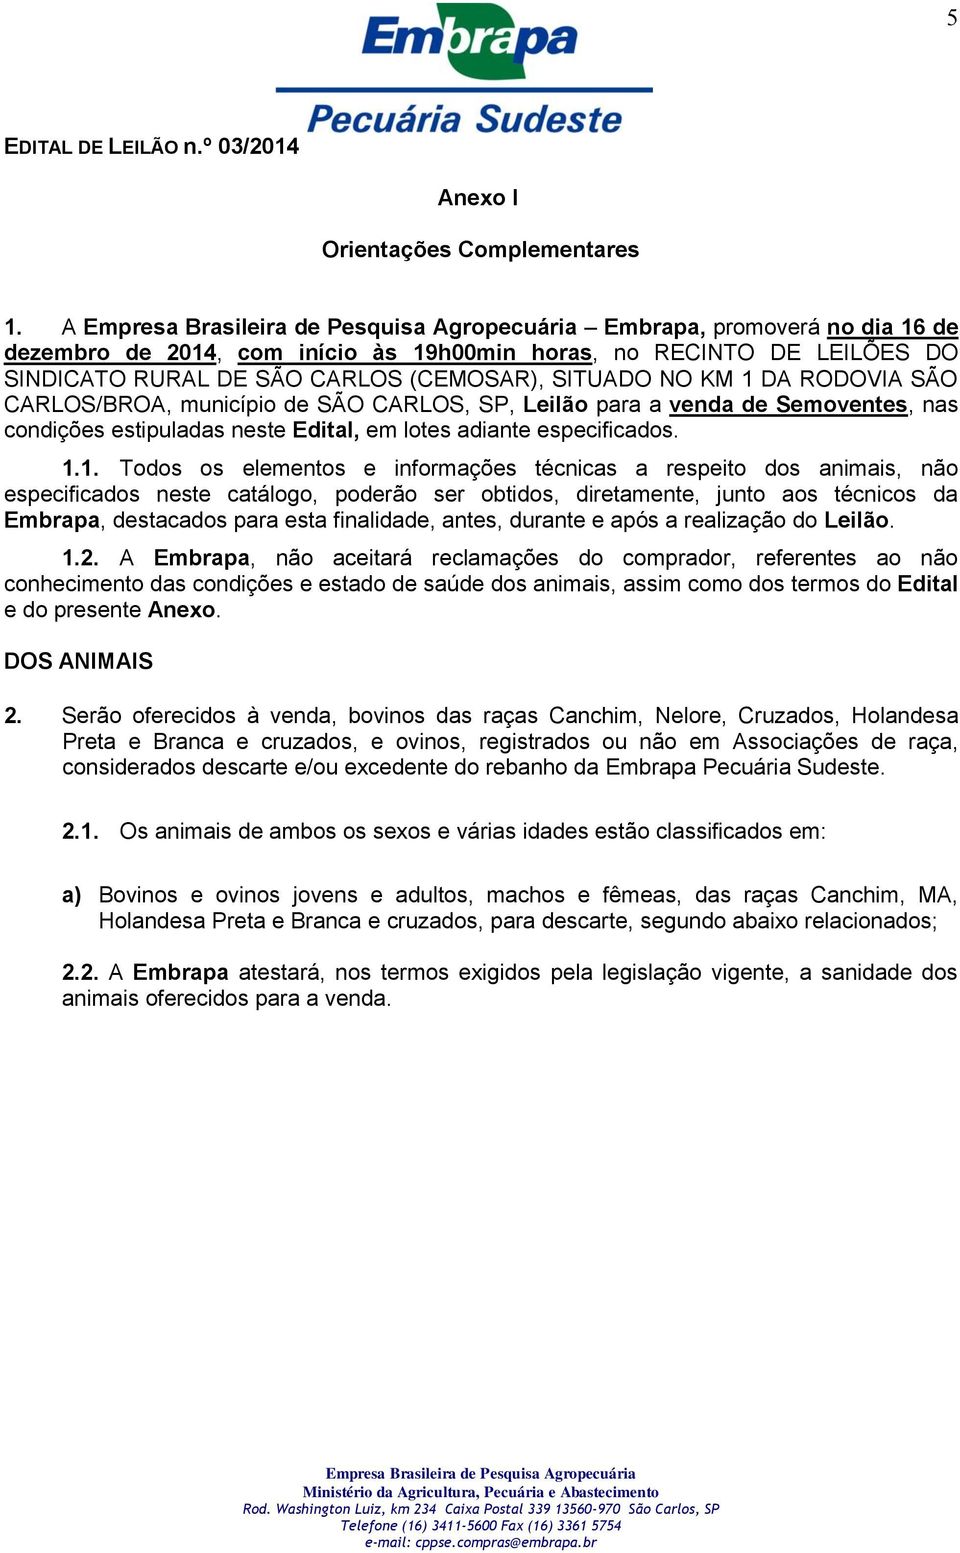 município de SÃO CARLOS, SP, Leilão para a venda de Semoventes, nas condições estipuladas neste Edital, em lotes adiante especificados. 1.